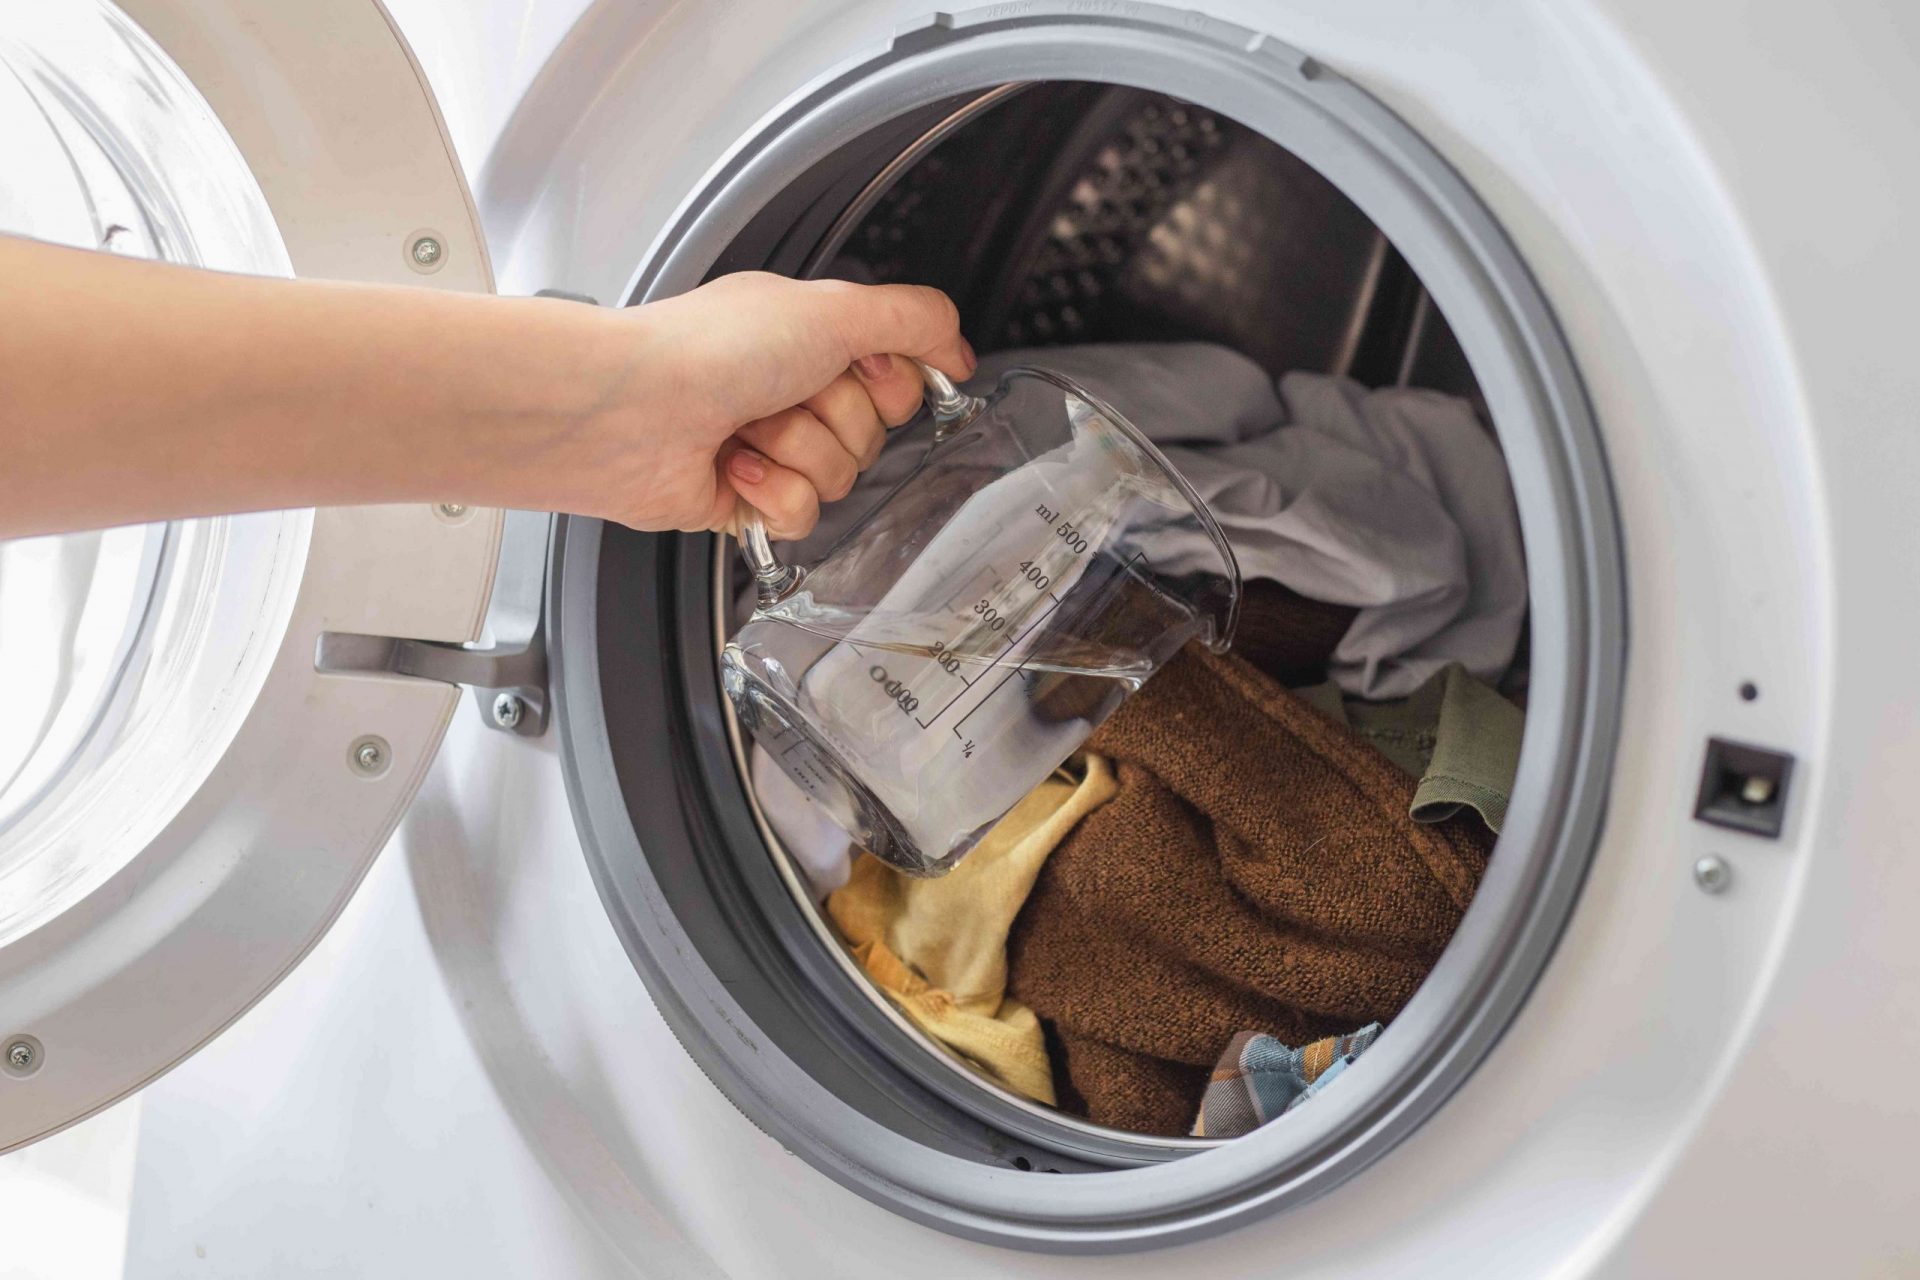 la mano vierte vinagre directamente sobre la ropa sucia de la lavadora abierta